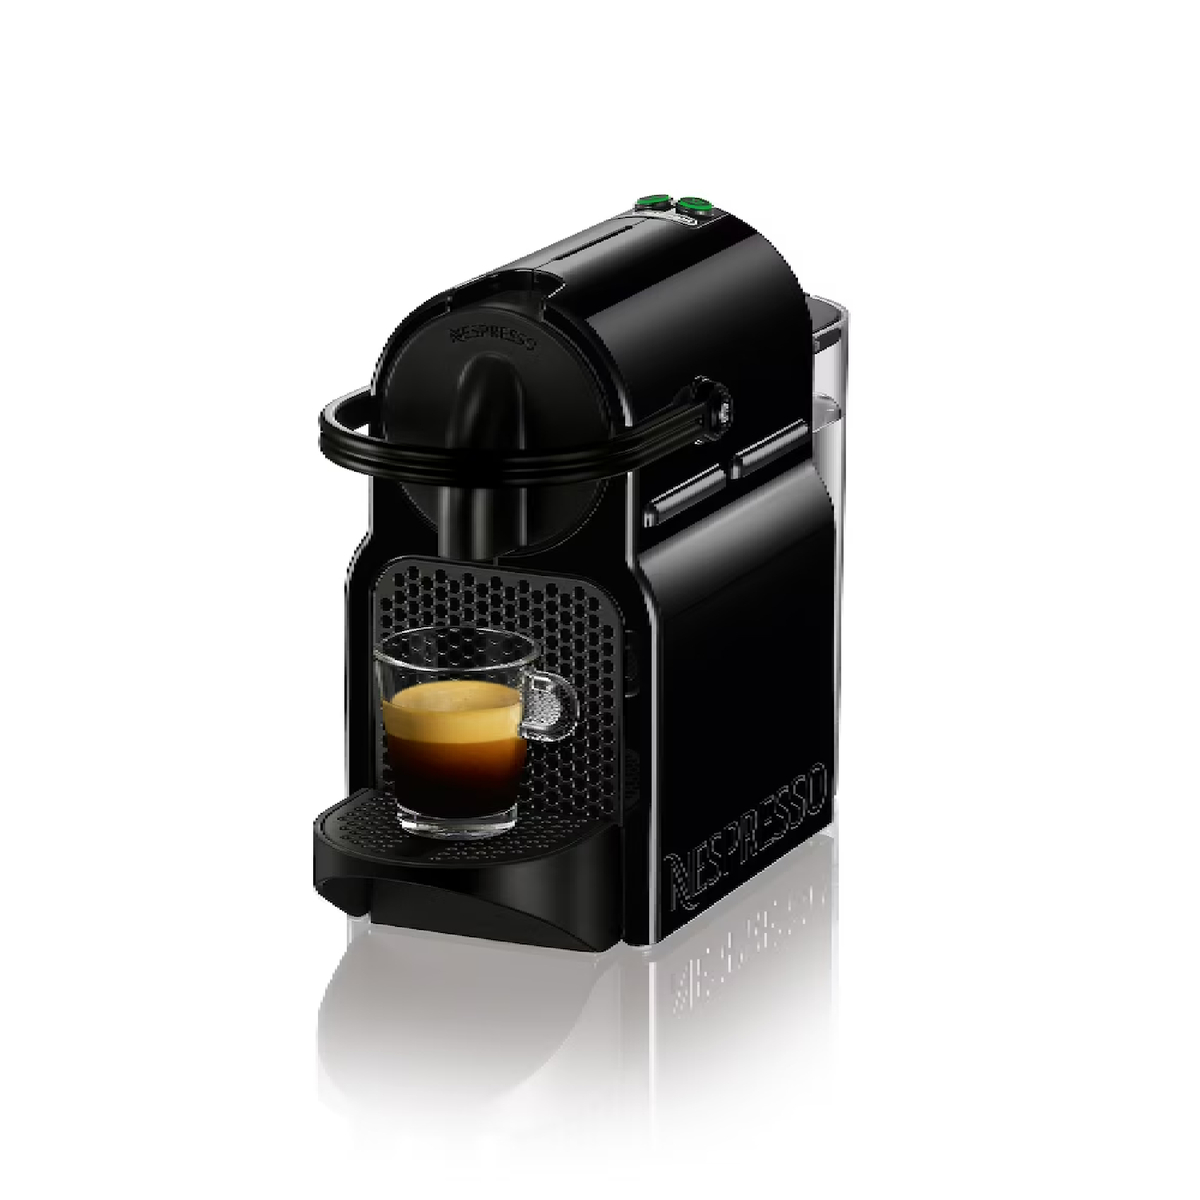 نسبريسو ماكينة قهوة مع كوب ايروتشينو، 700 مل، اسود، D40BU-BK